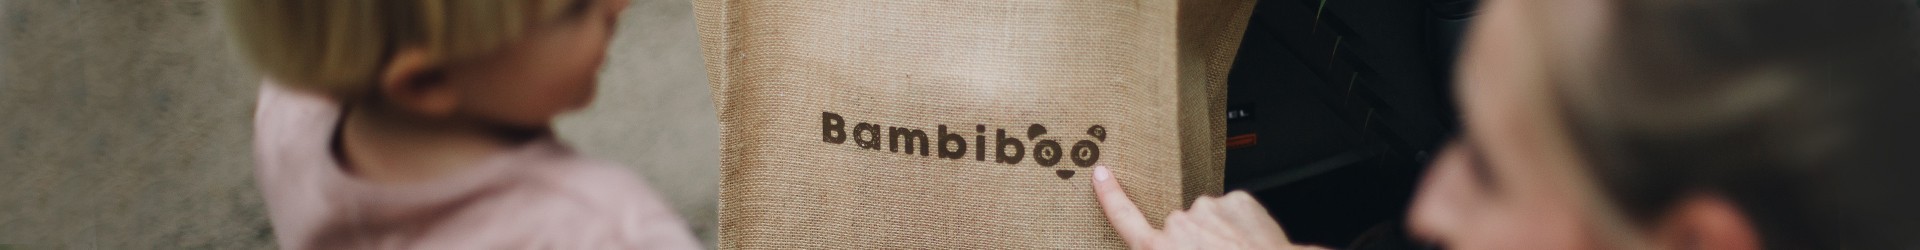 Produkte und Zubehör | Bambiboo.eu